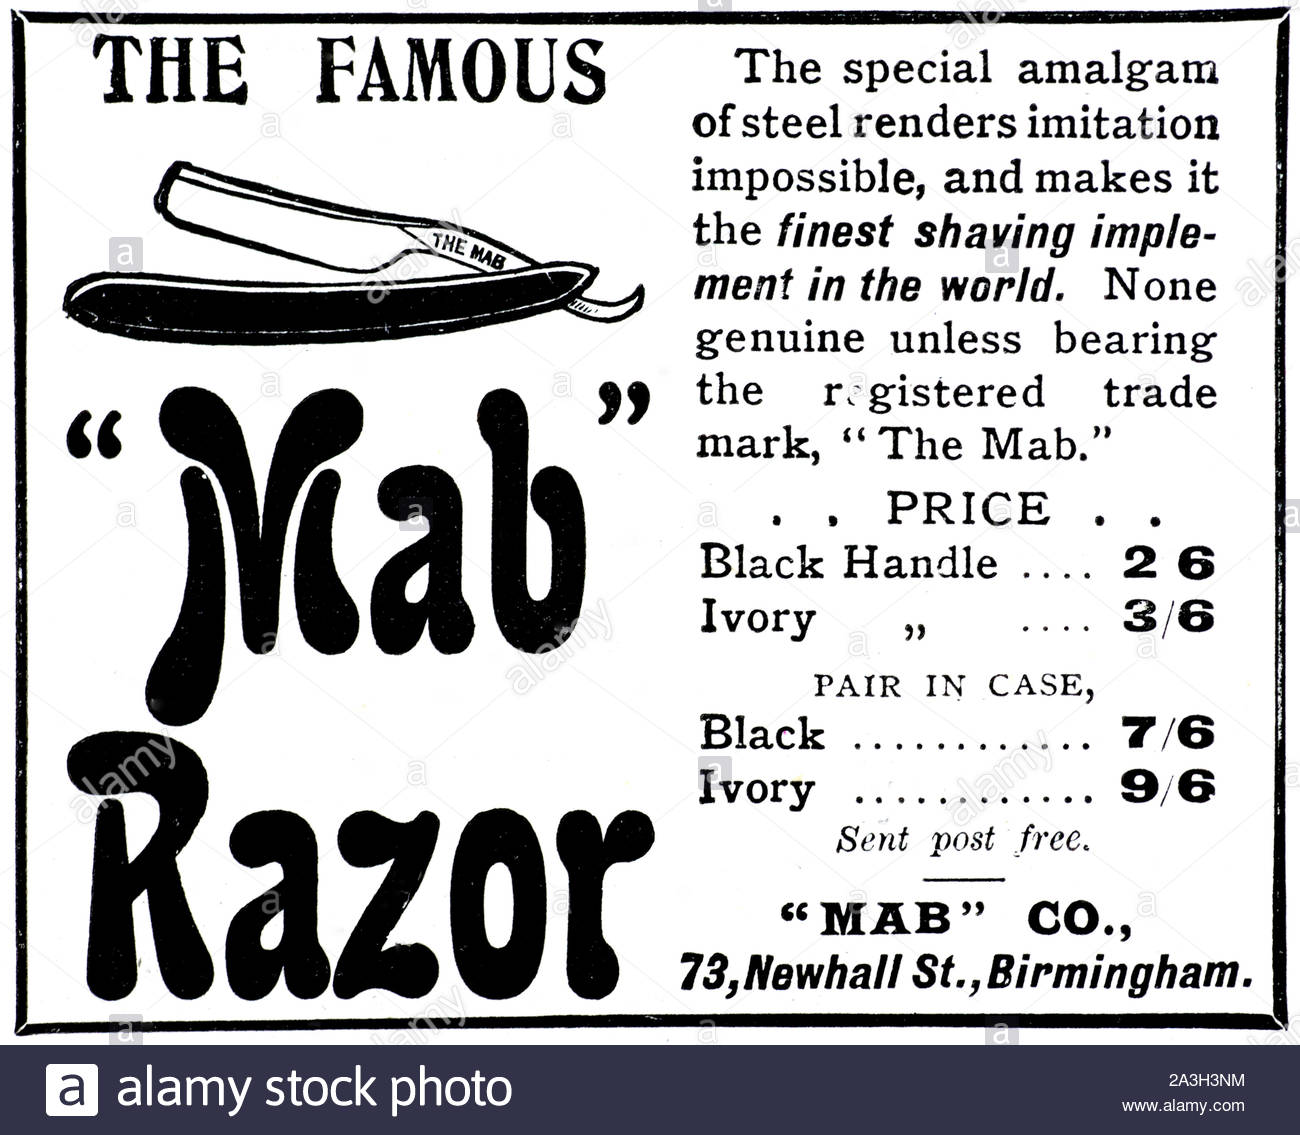 L'époque victorienne, le fameux rasoir Mab, vintage advertising à partir de 1899 Banque D'Images